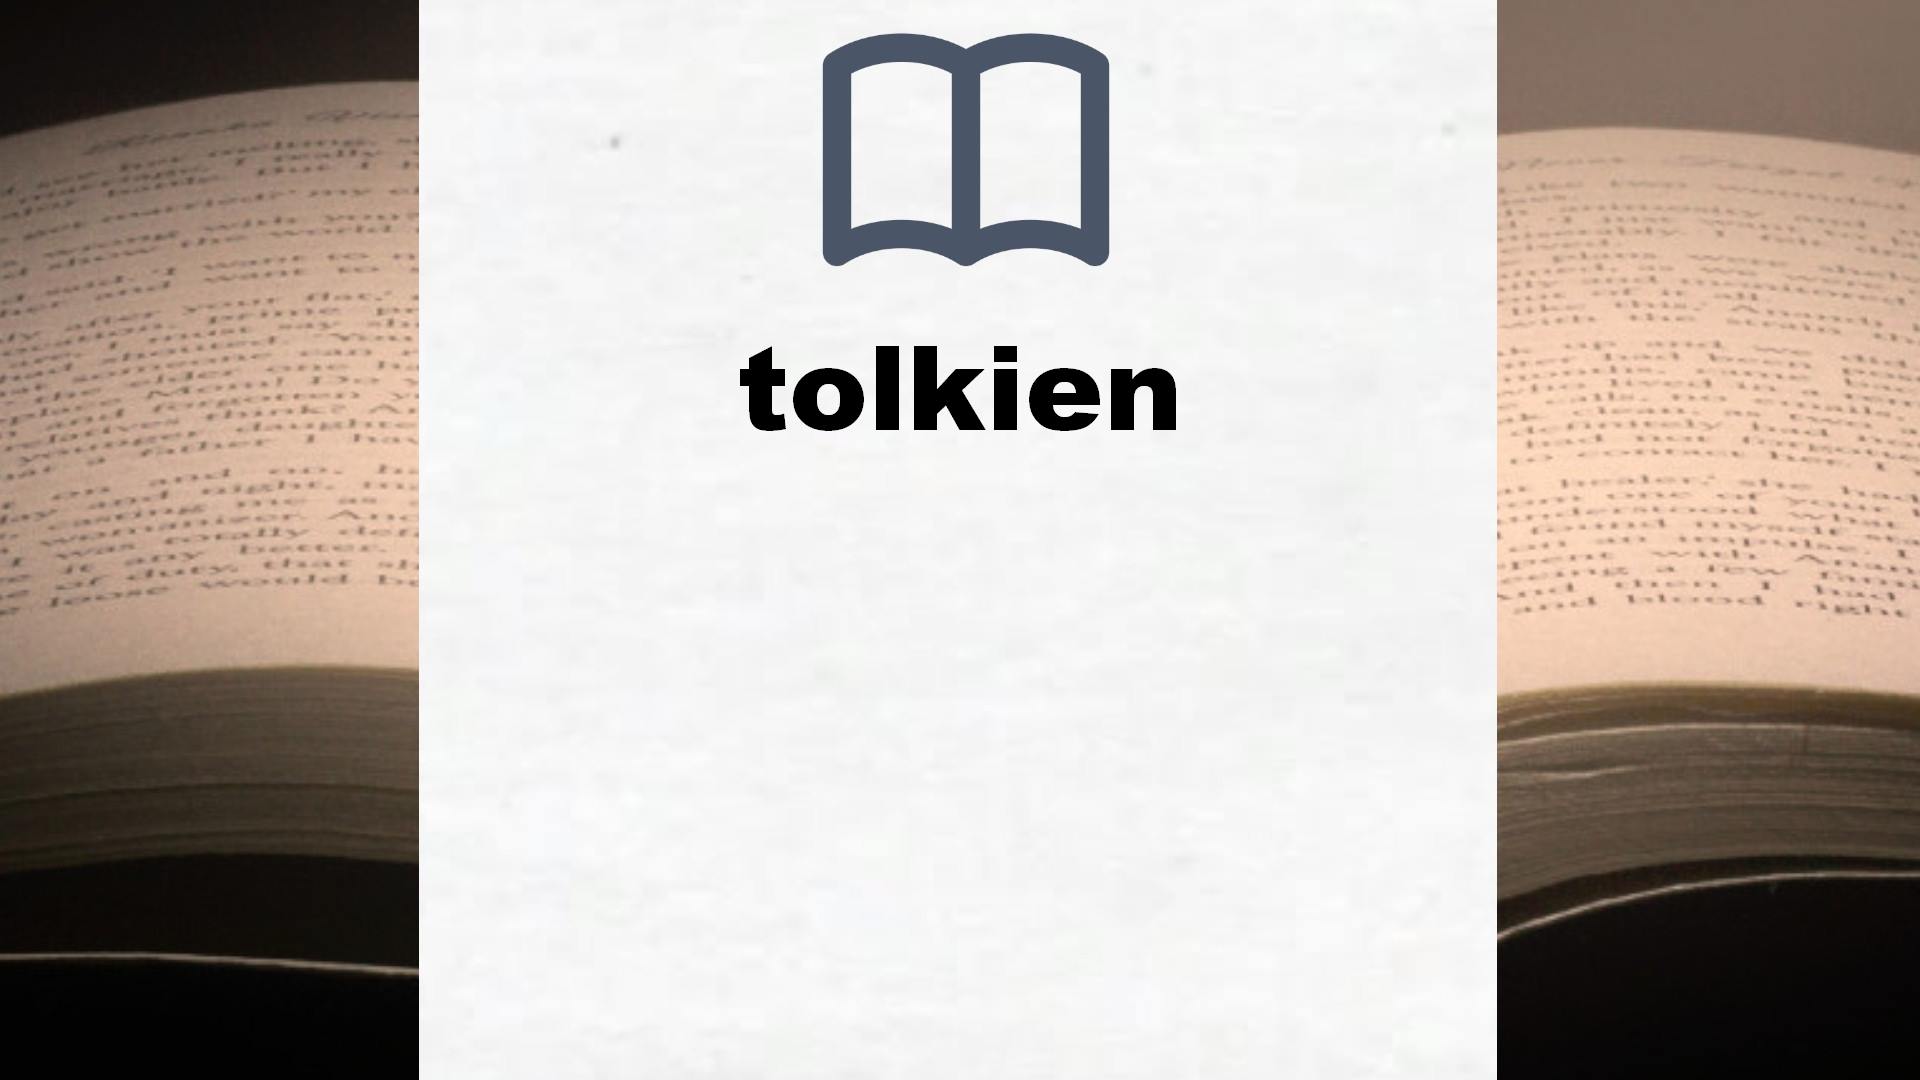 Libros sobre tolkien